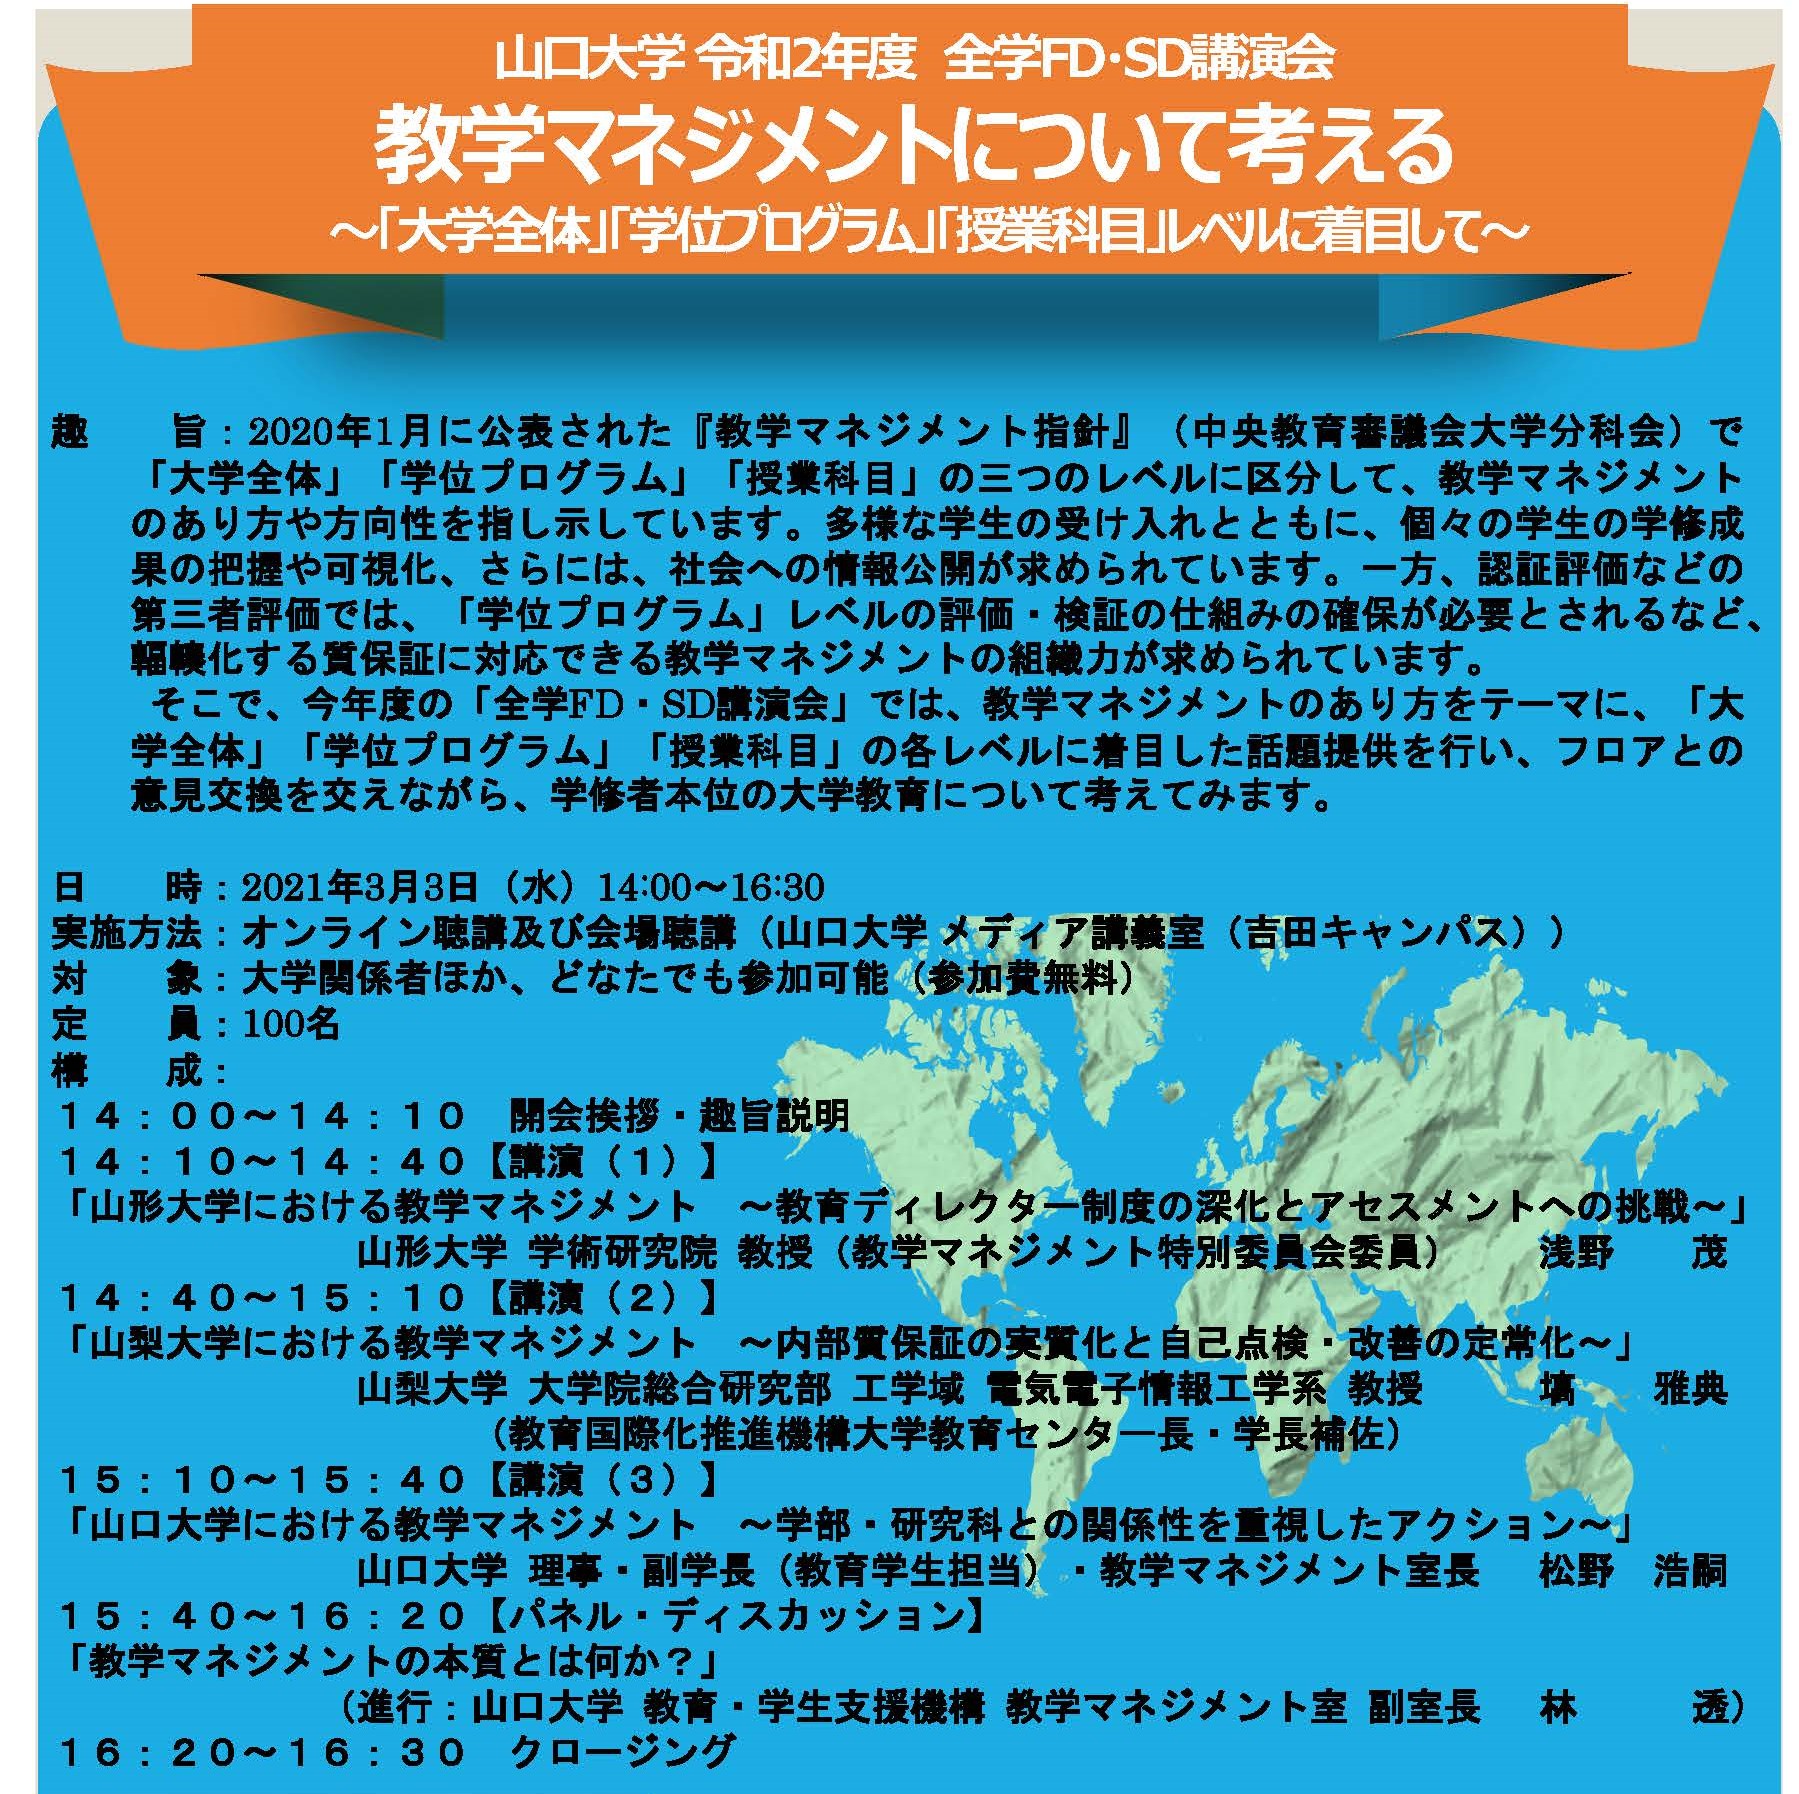 【最終版アレンジ】全学FD・SD講演会チラシ20210118_ページ_1.jpg